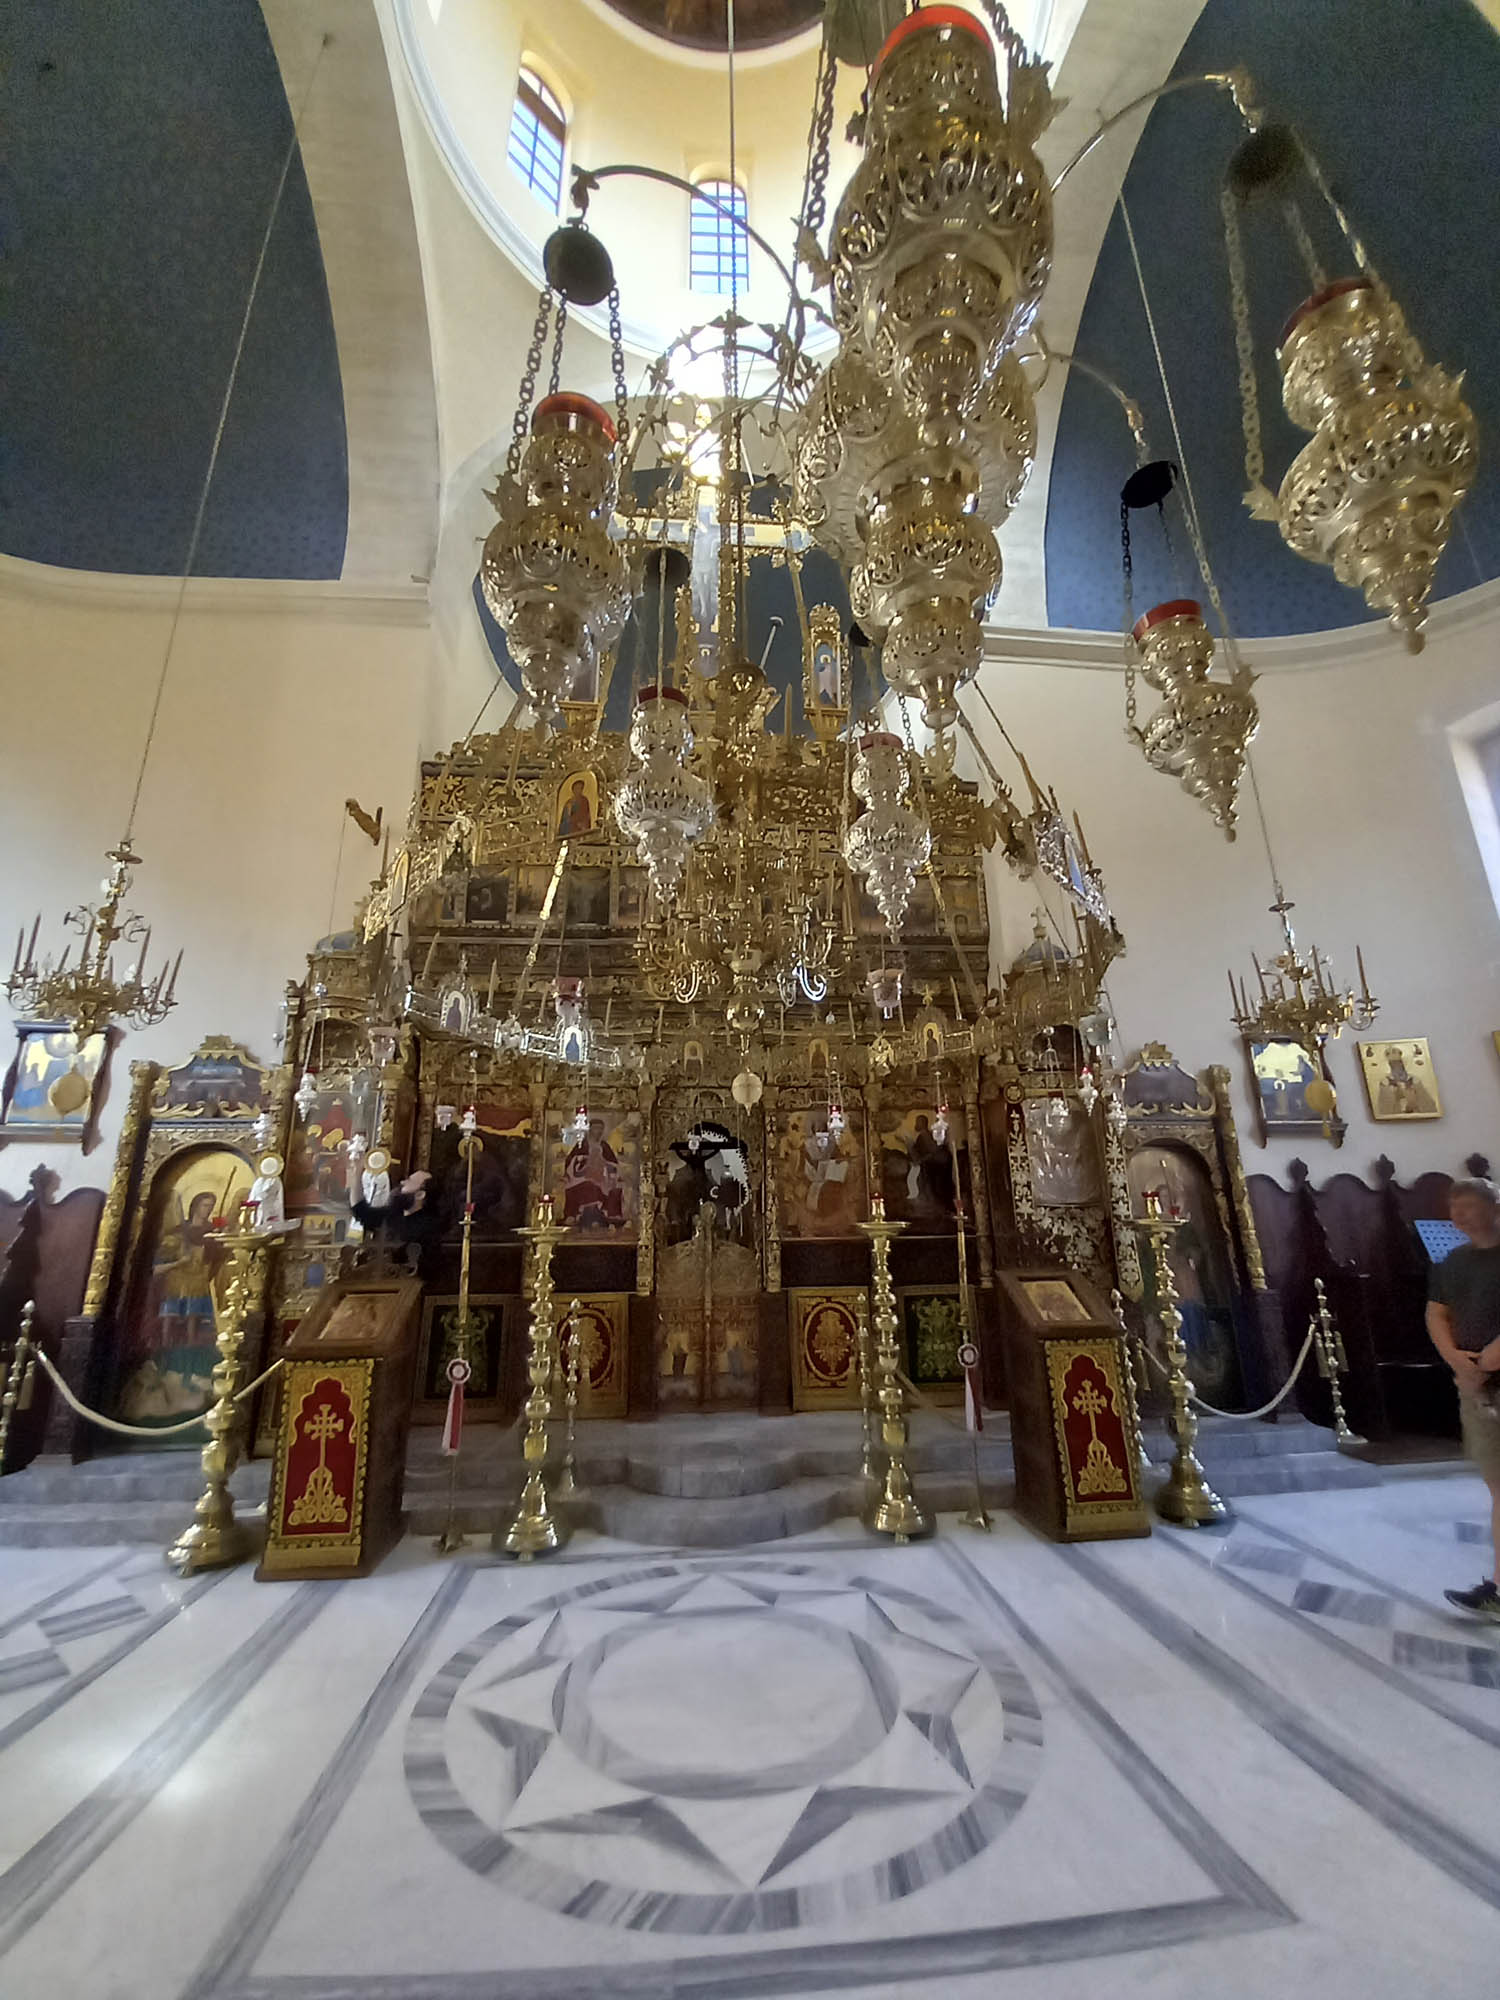 wnętrze cerkwi, bogato zdobione na złoto